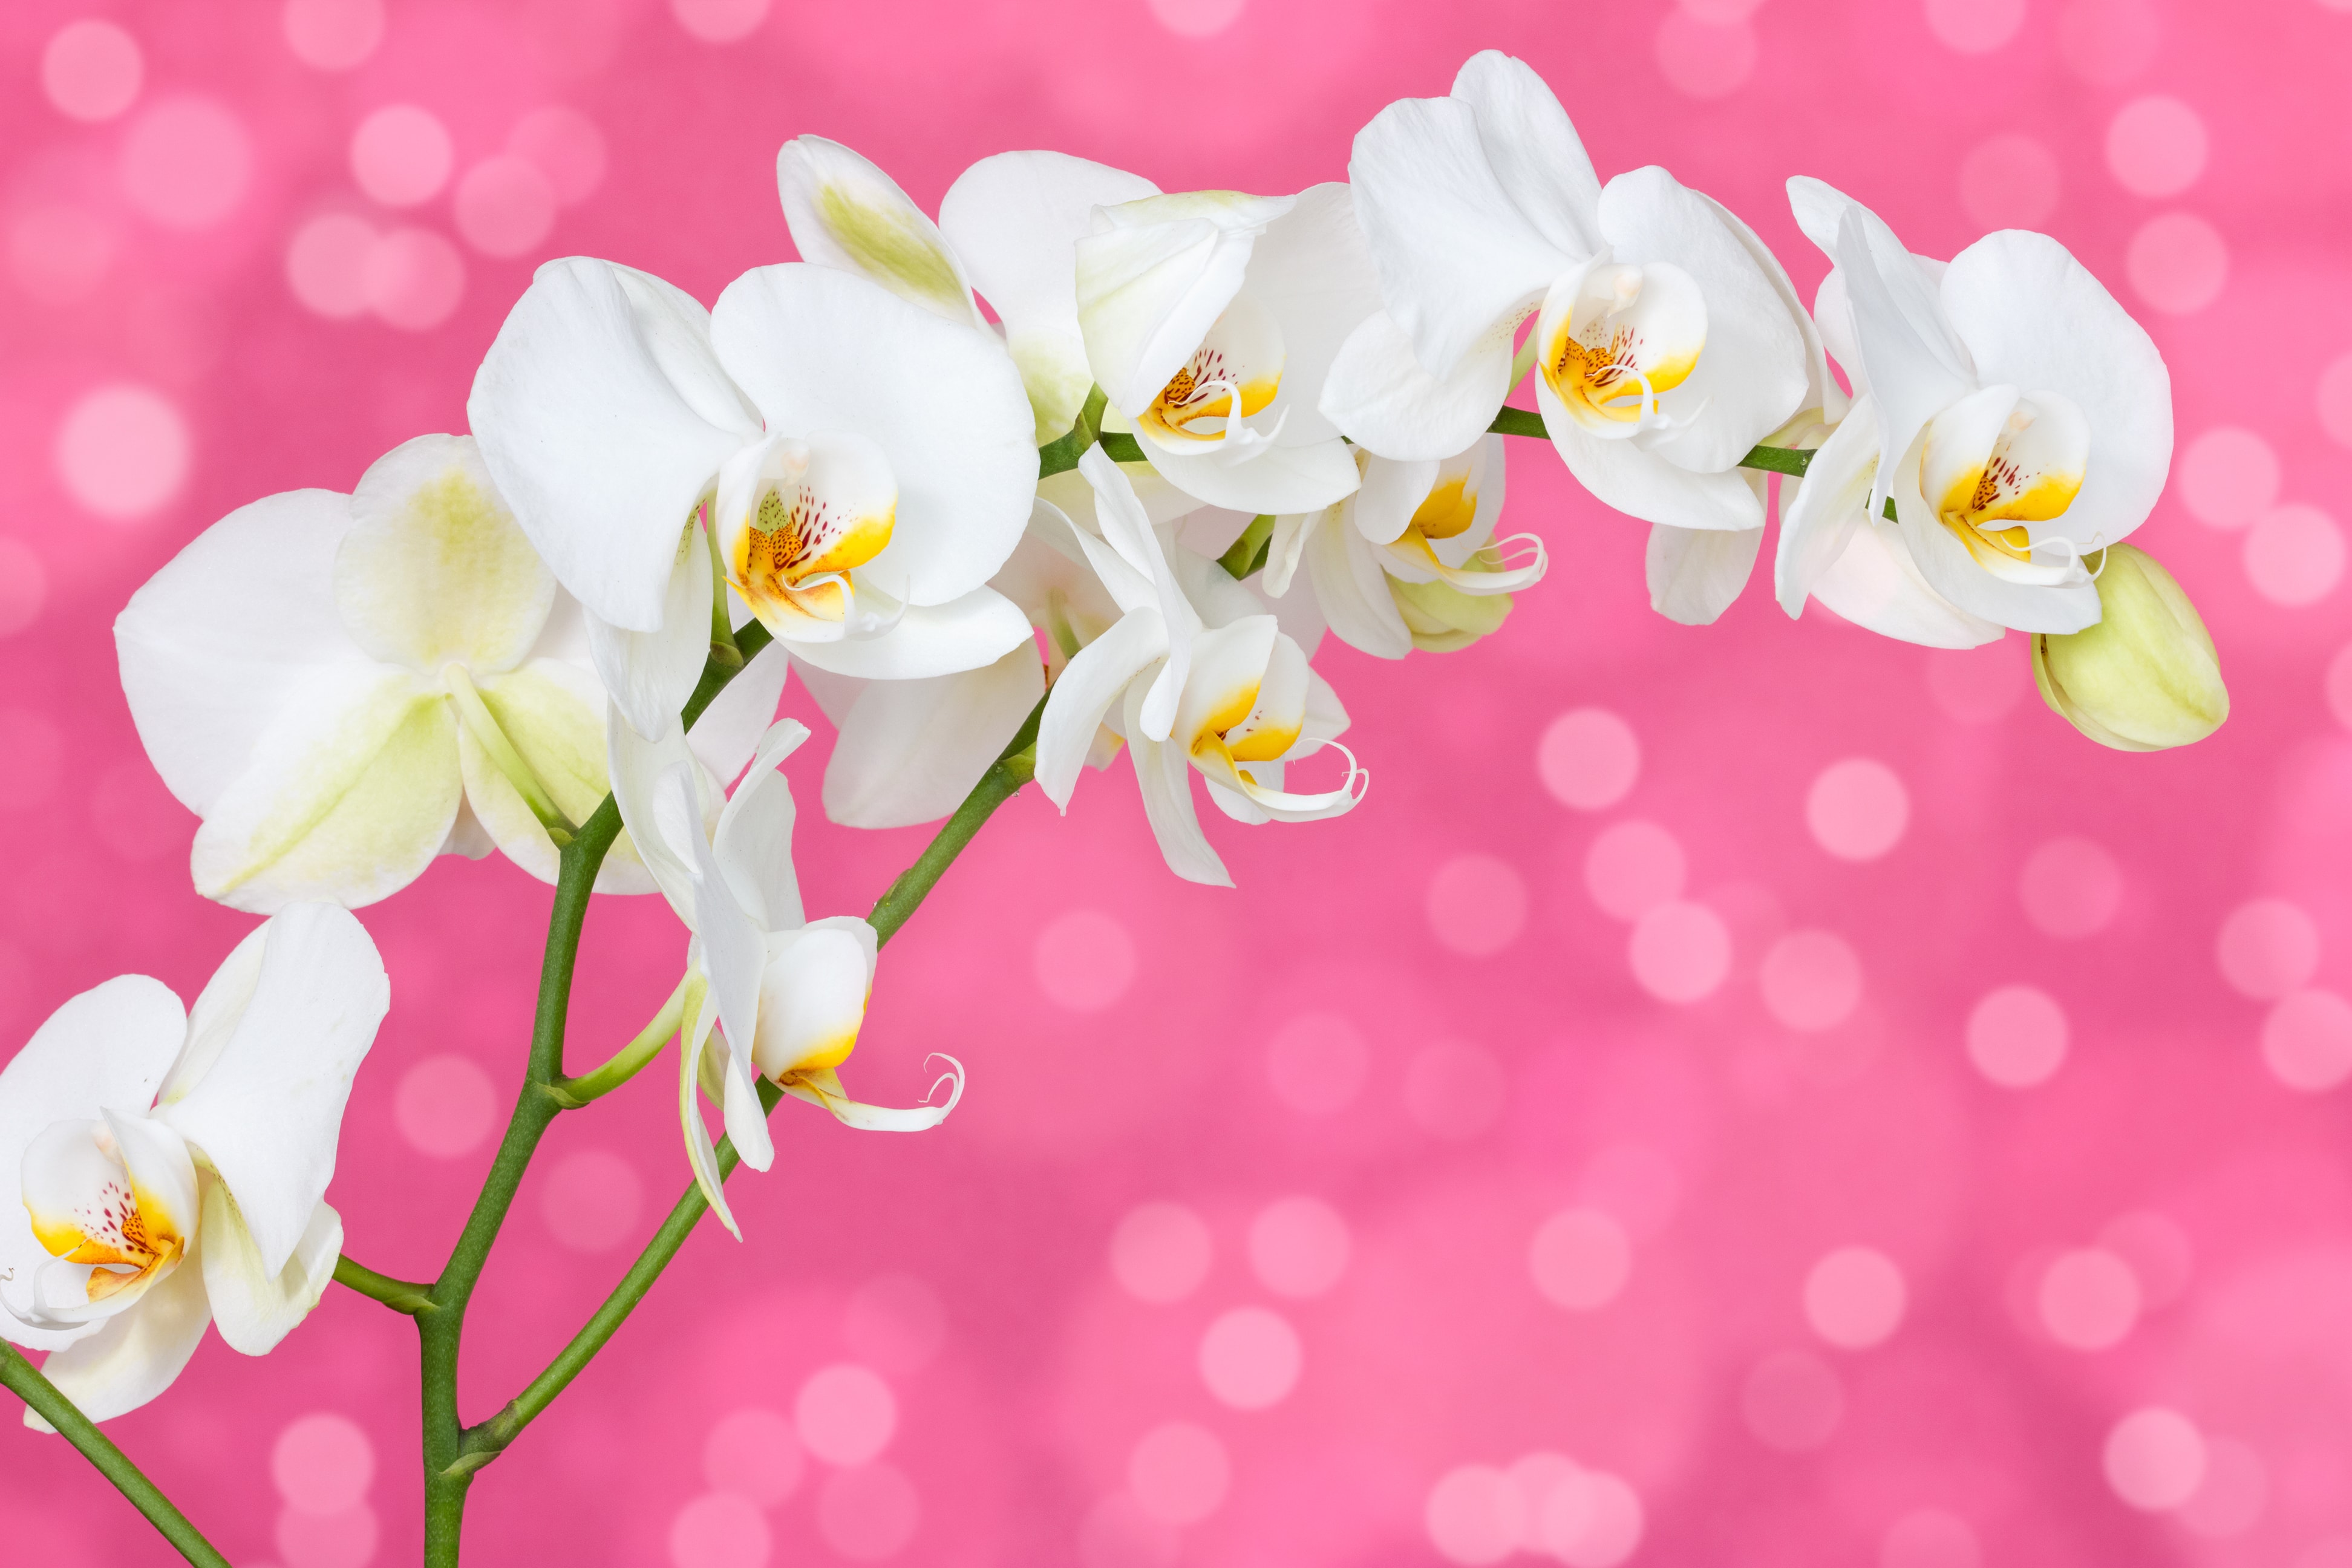 光触媒加工の胡蝶蘭とは その効果と人気の理由 お手入れ方法 Hanasaku